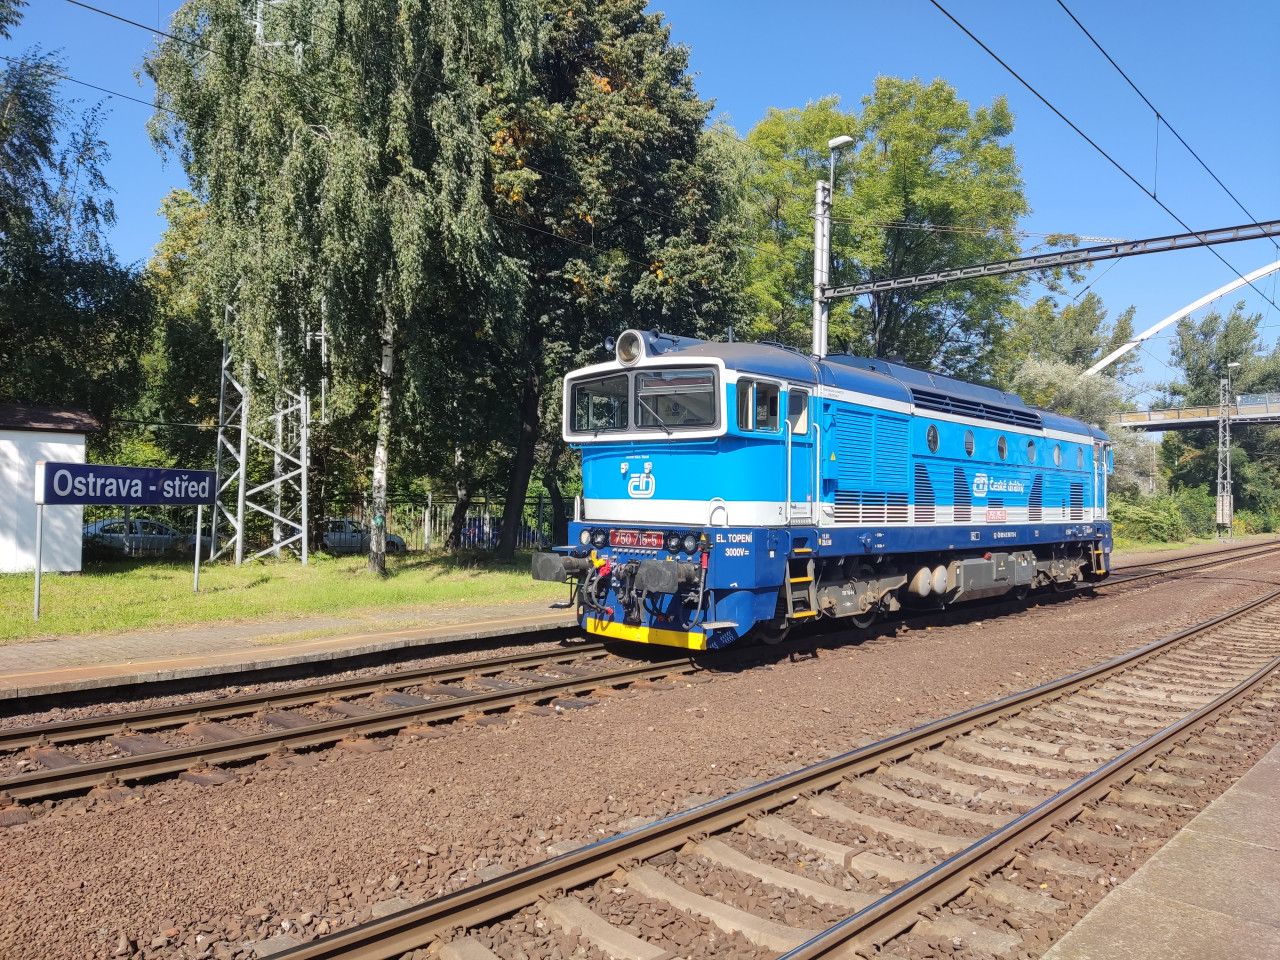 Pedstaven novho vlaku pro Moravskoslezsk kraj, Ostrava sted 